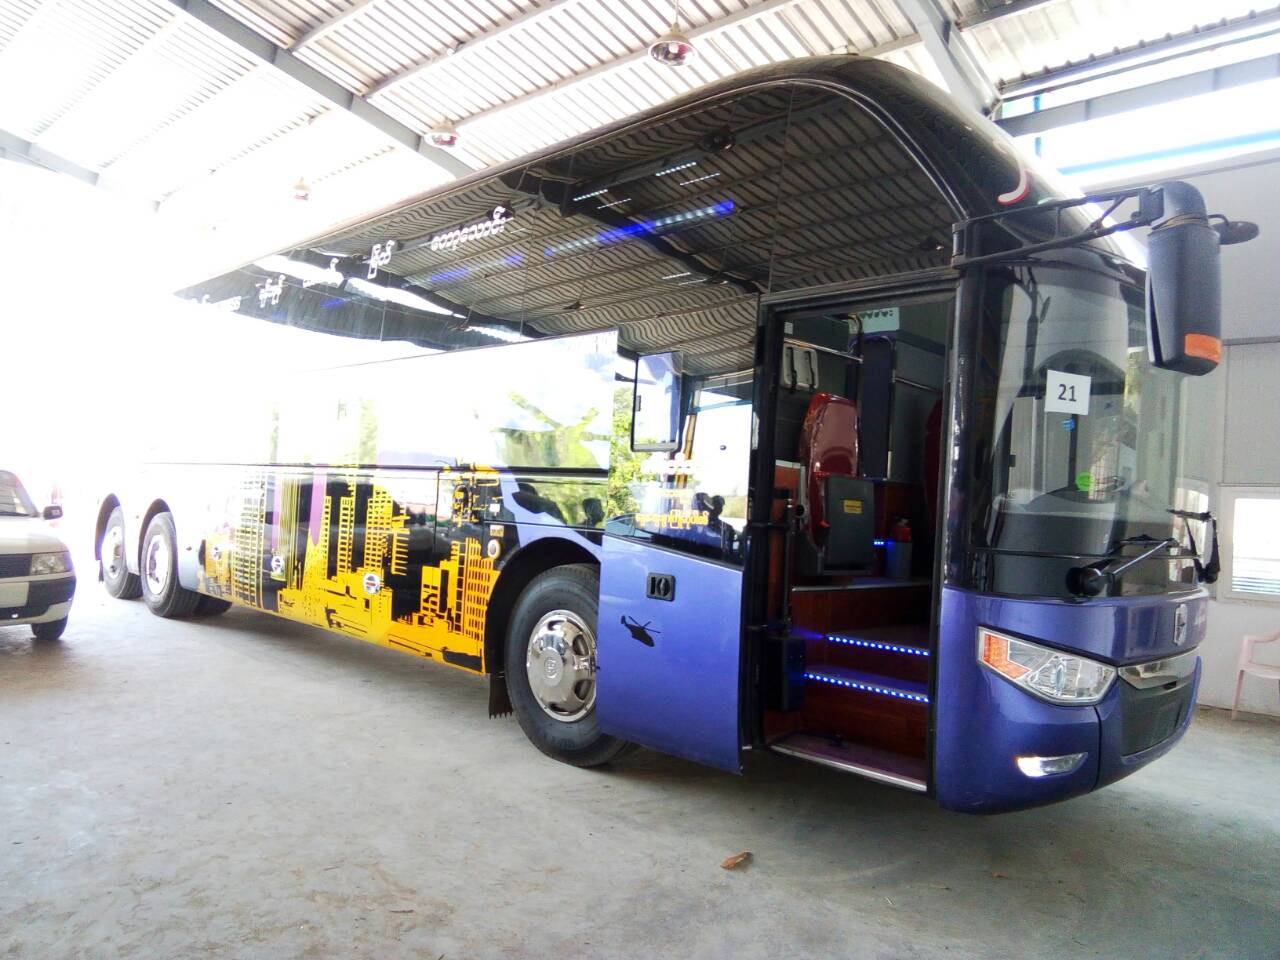 Zhong-Tong-Bus-Seats-Thura-U-Thet-Swe-2